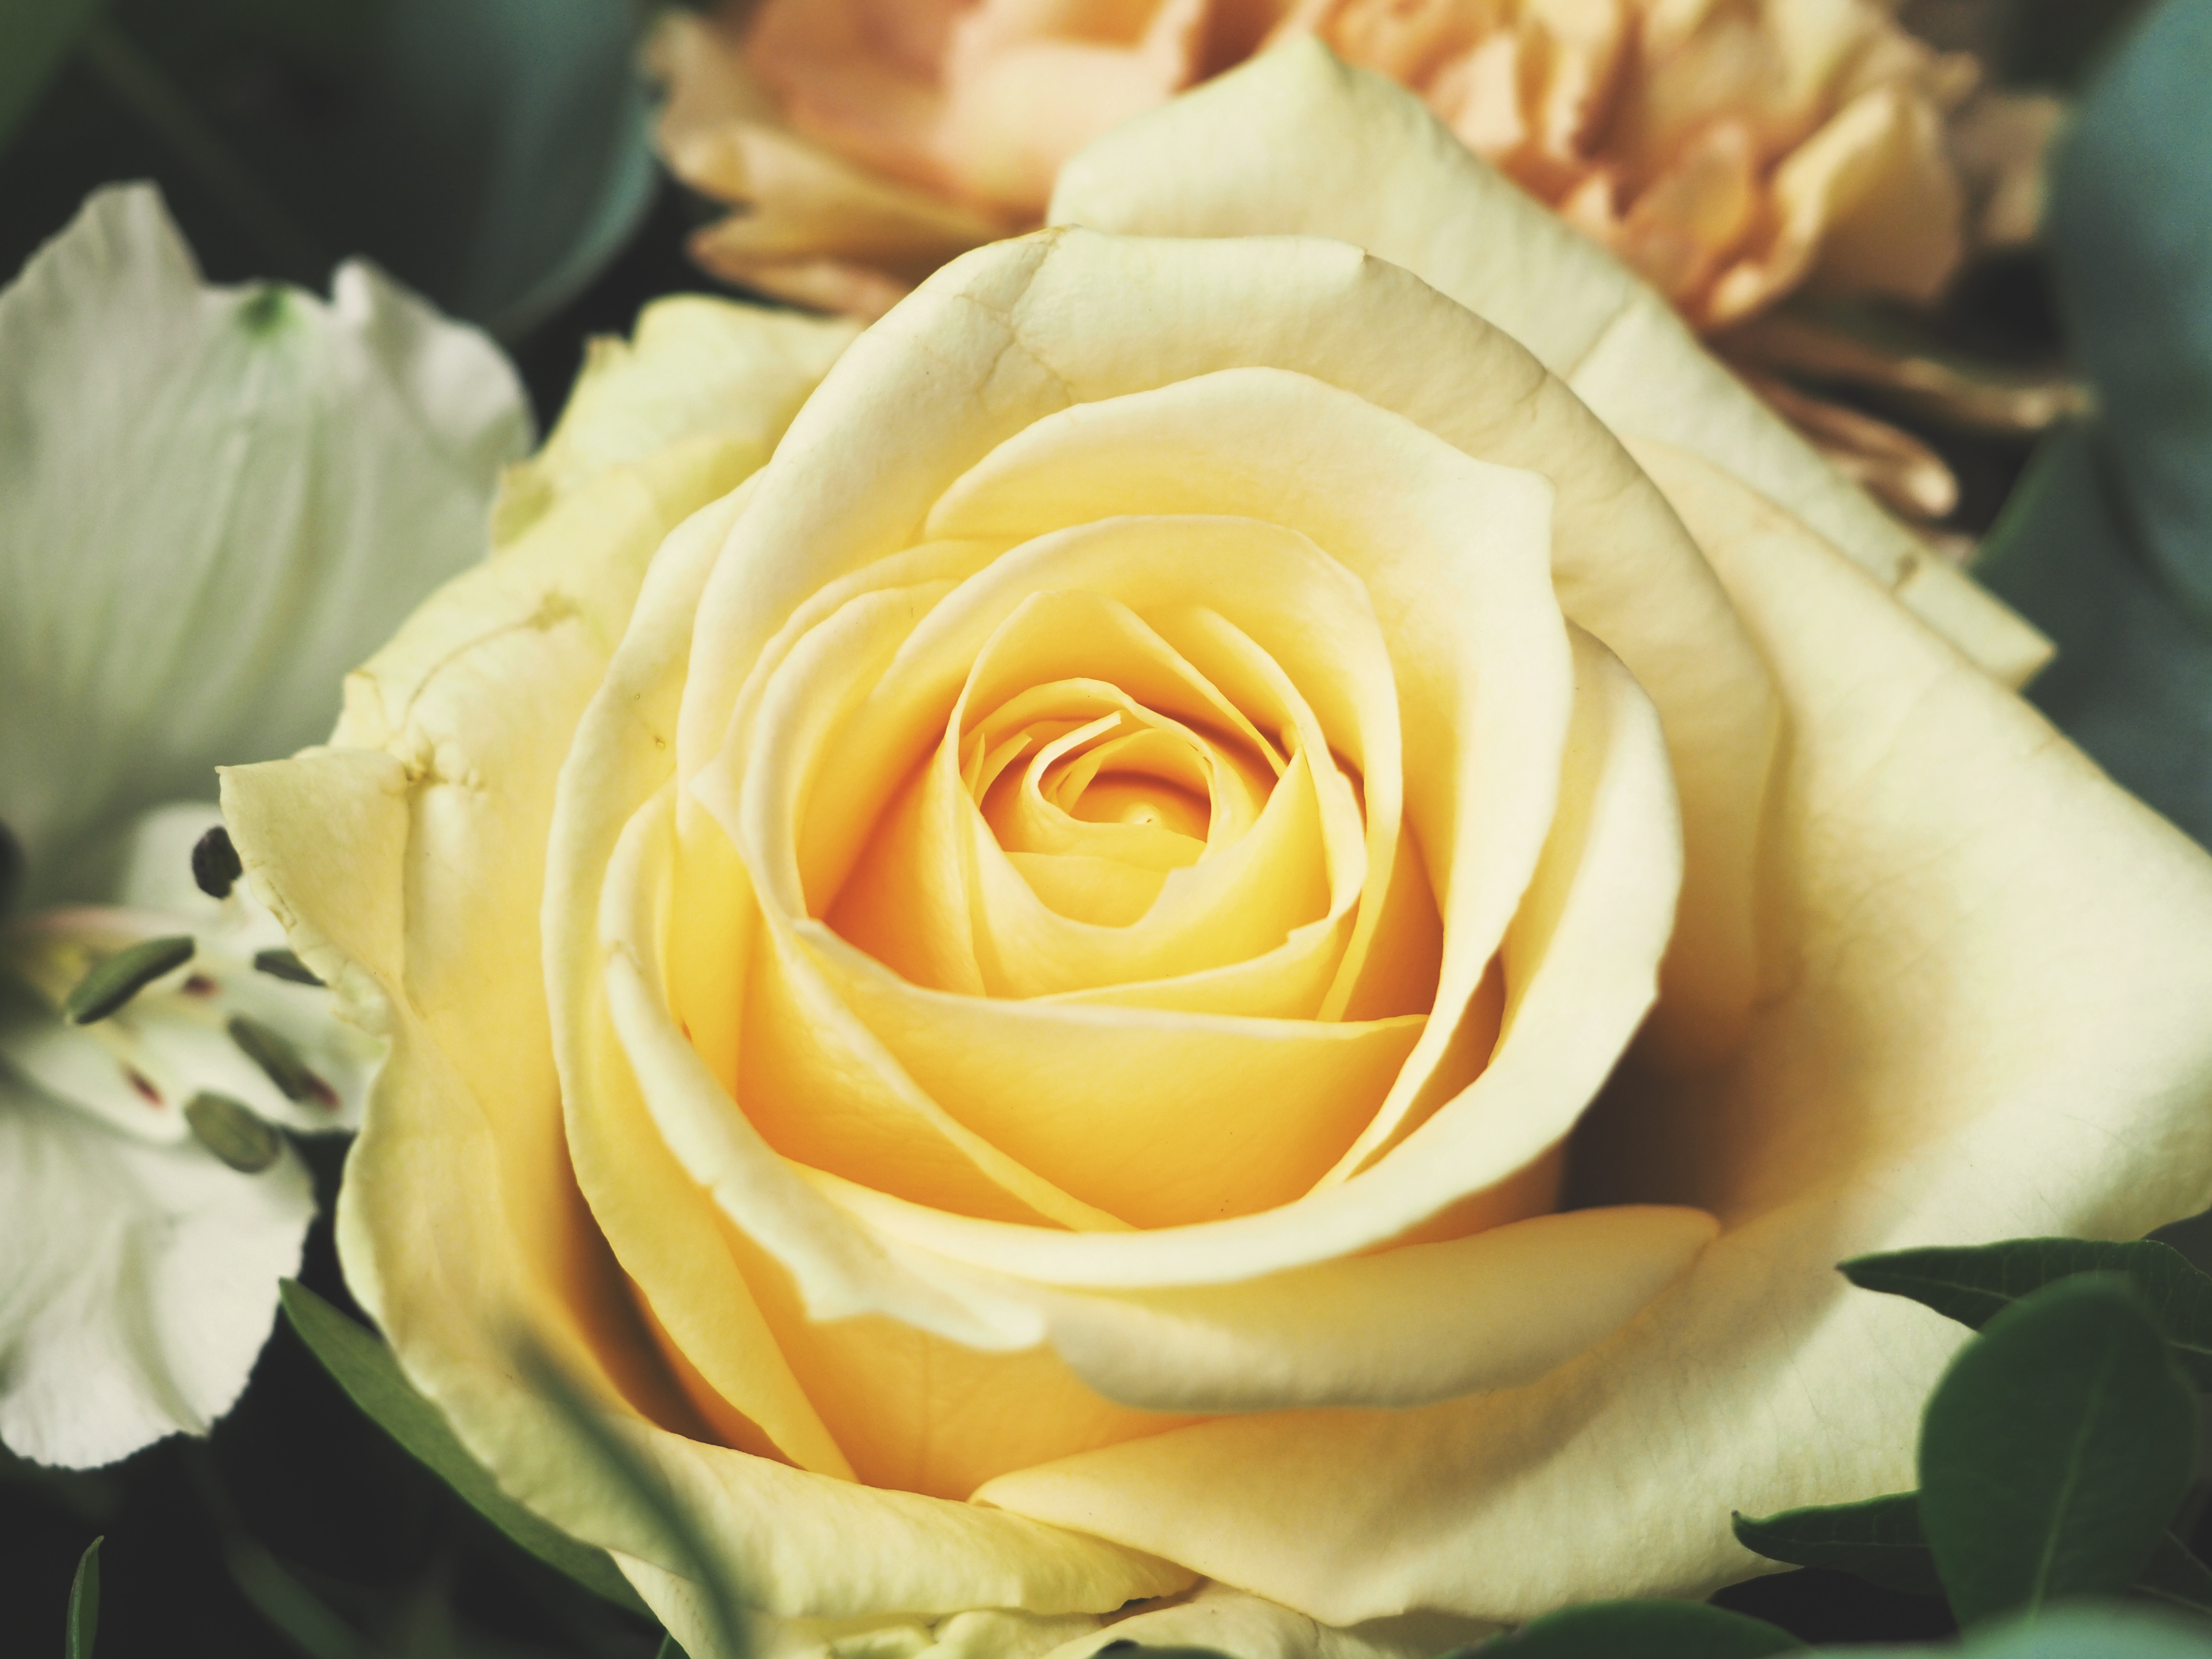 Бутон желтой розы крупным планом · бесплатная фотография